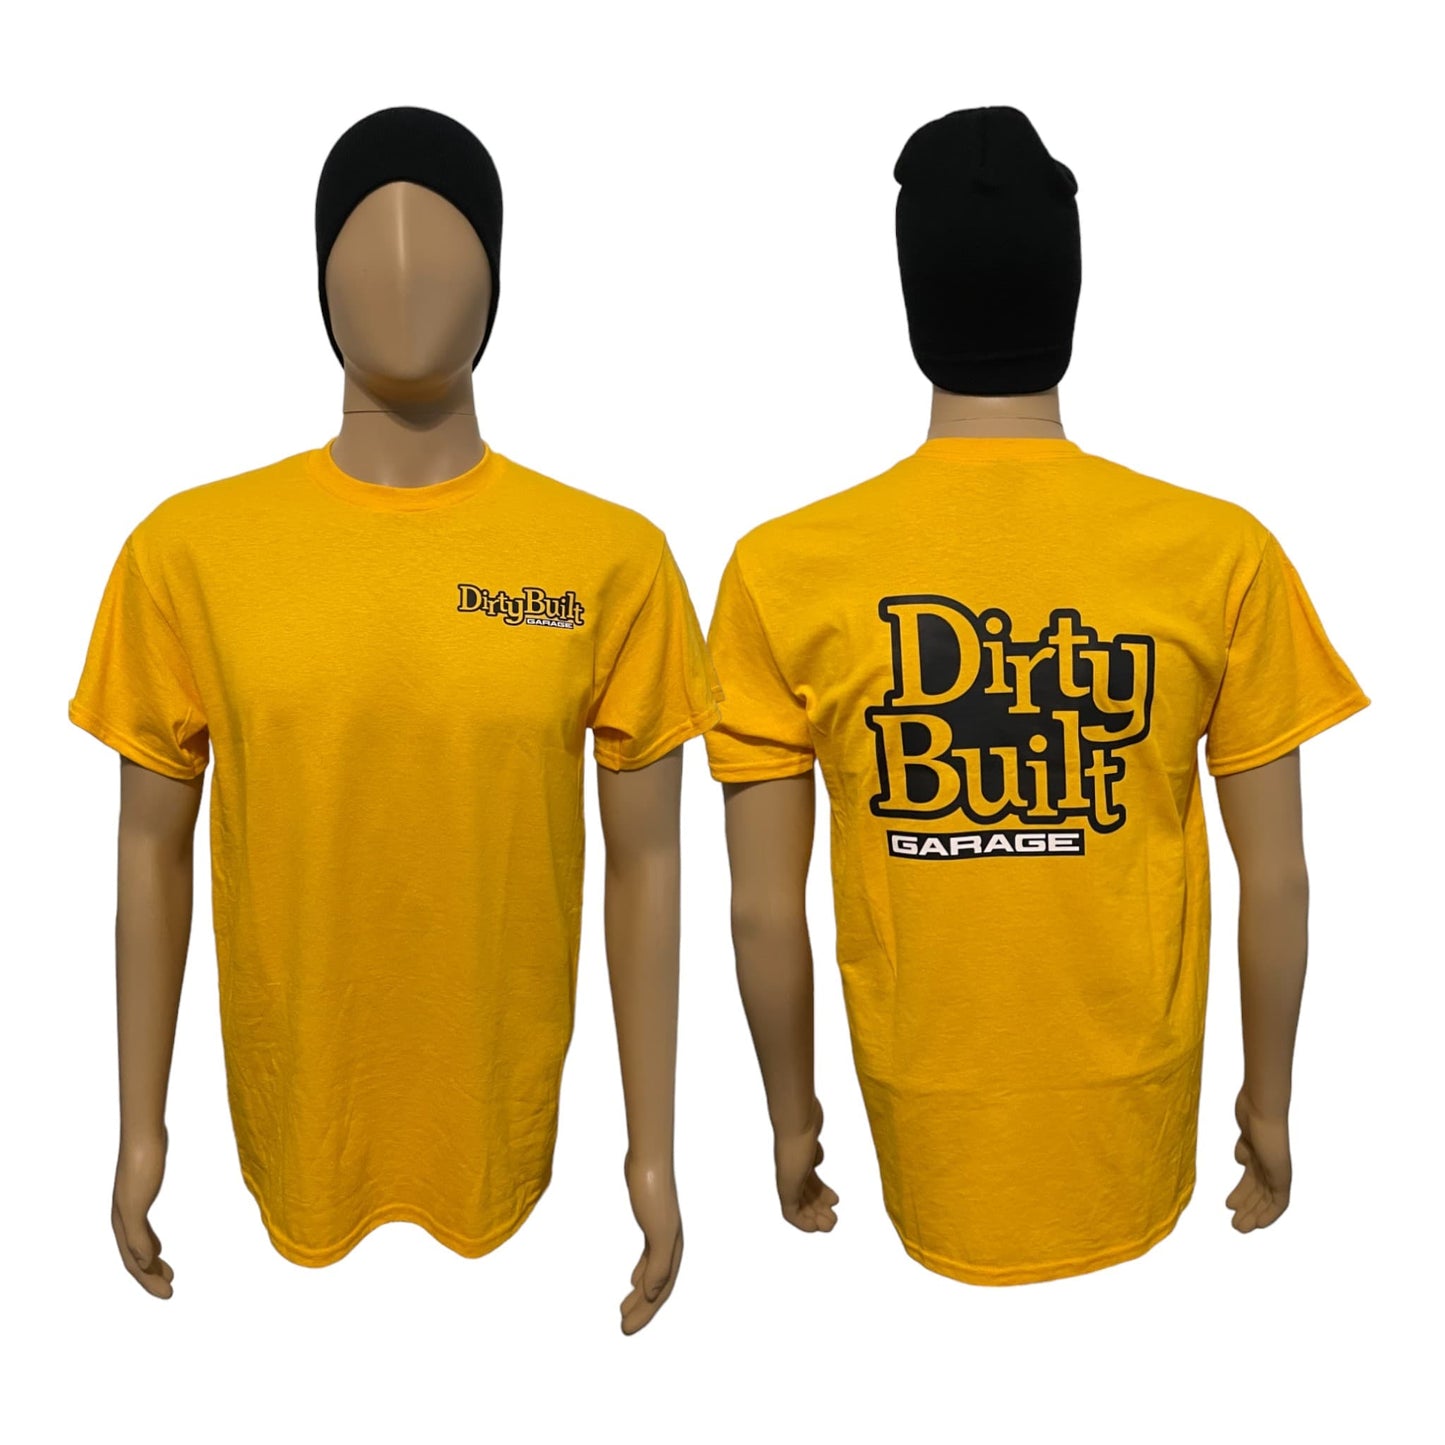 Dirty-Built-Garage-Shirt-Gold-2